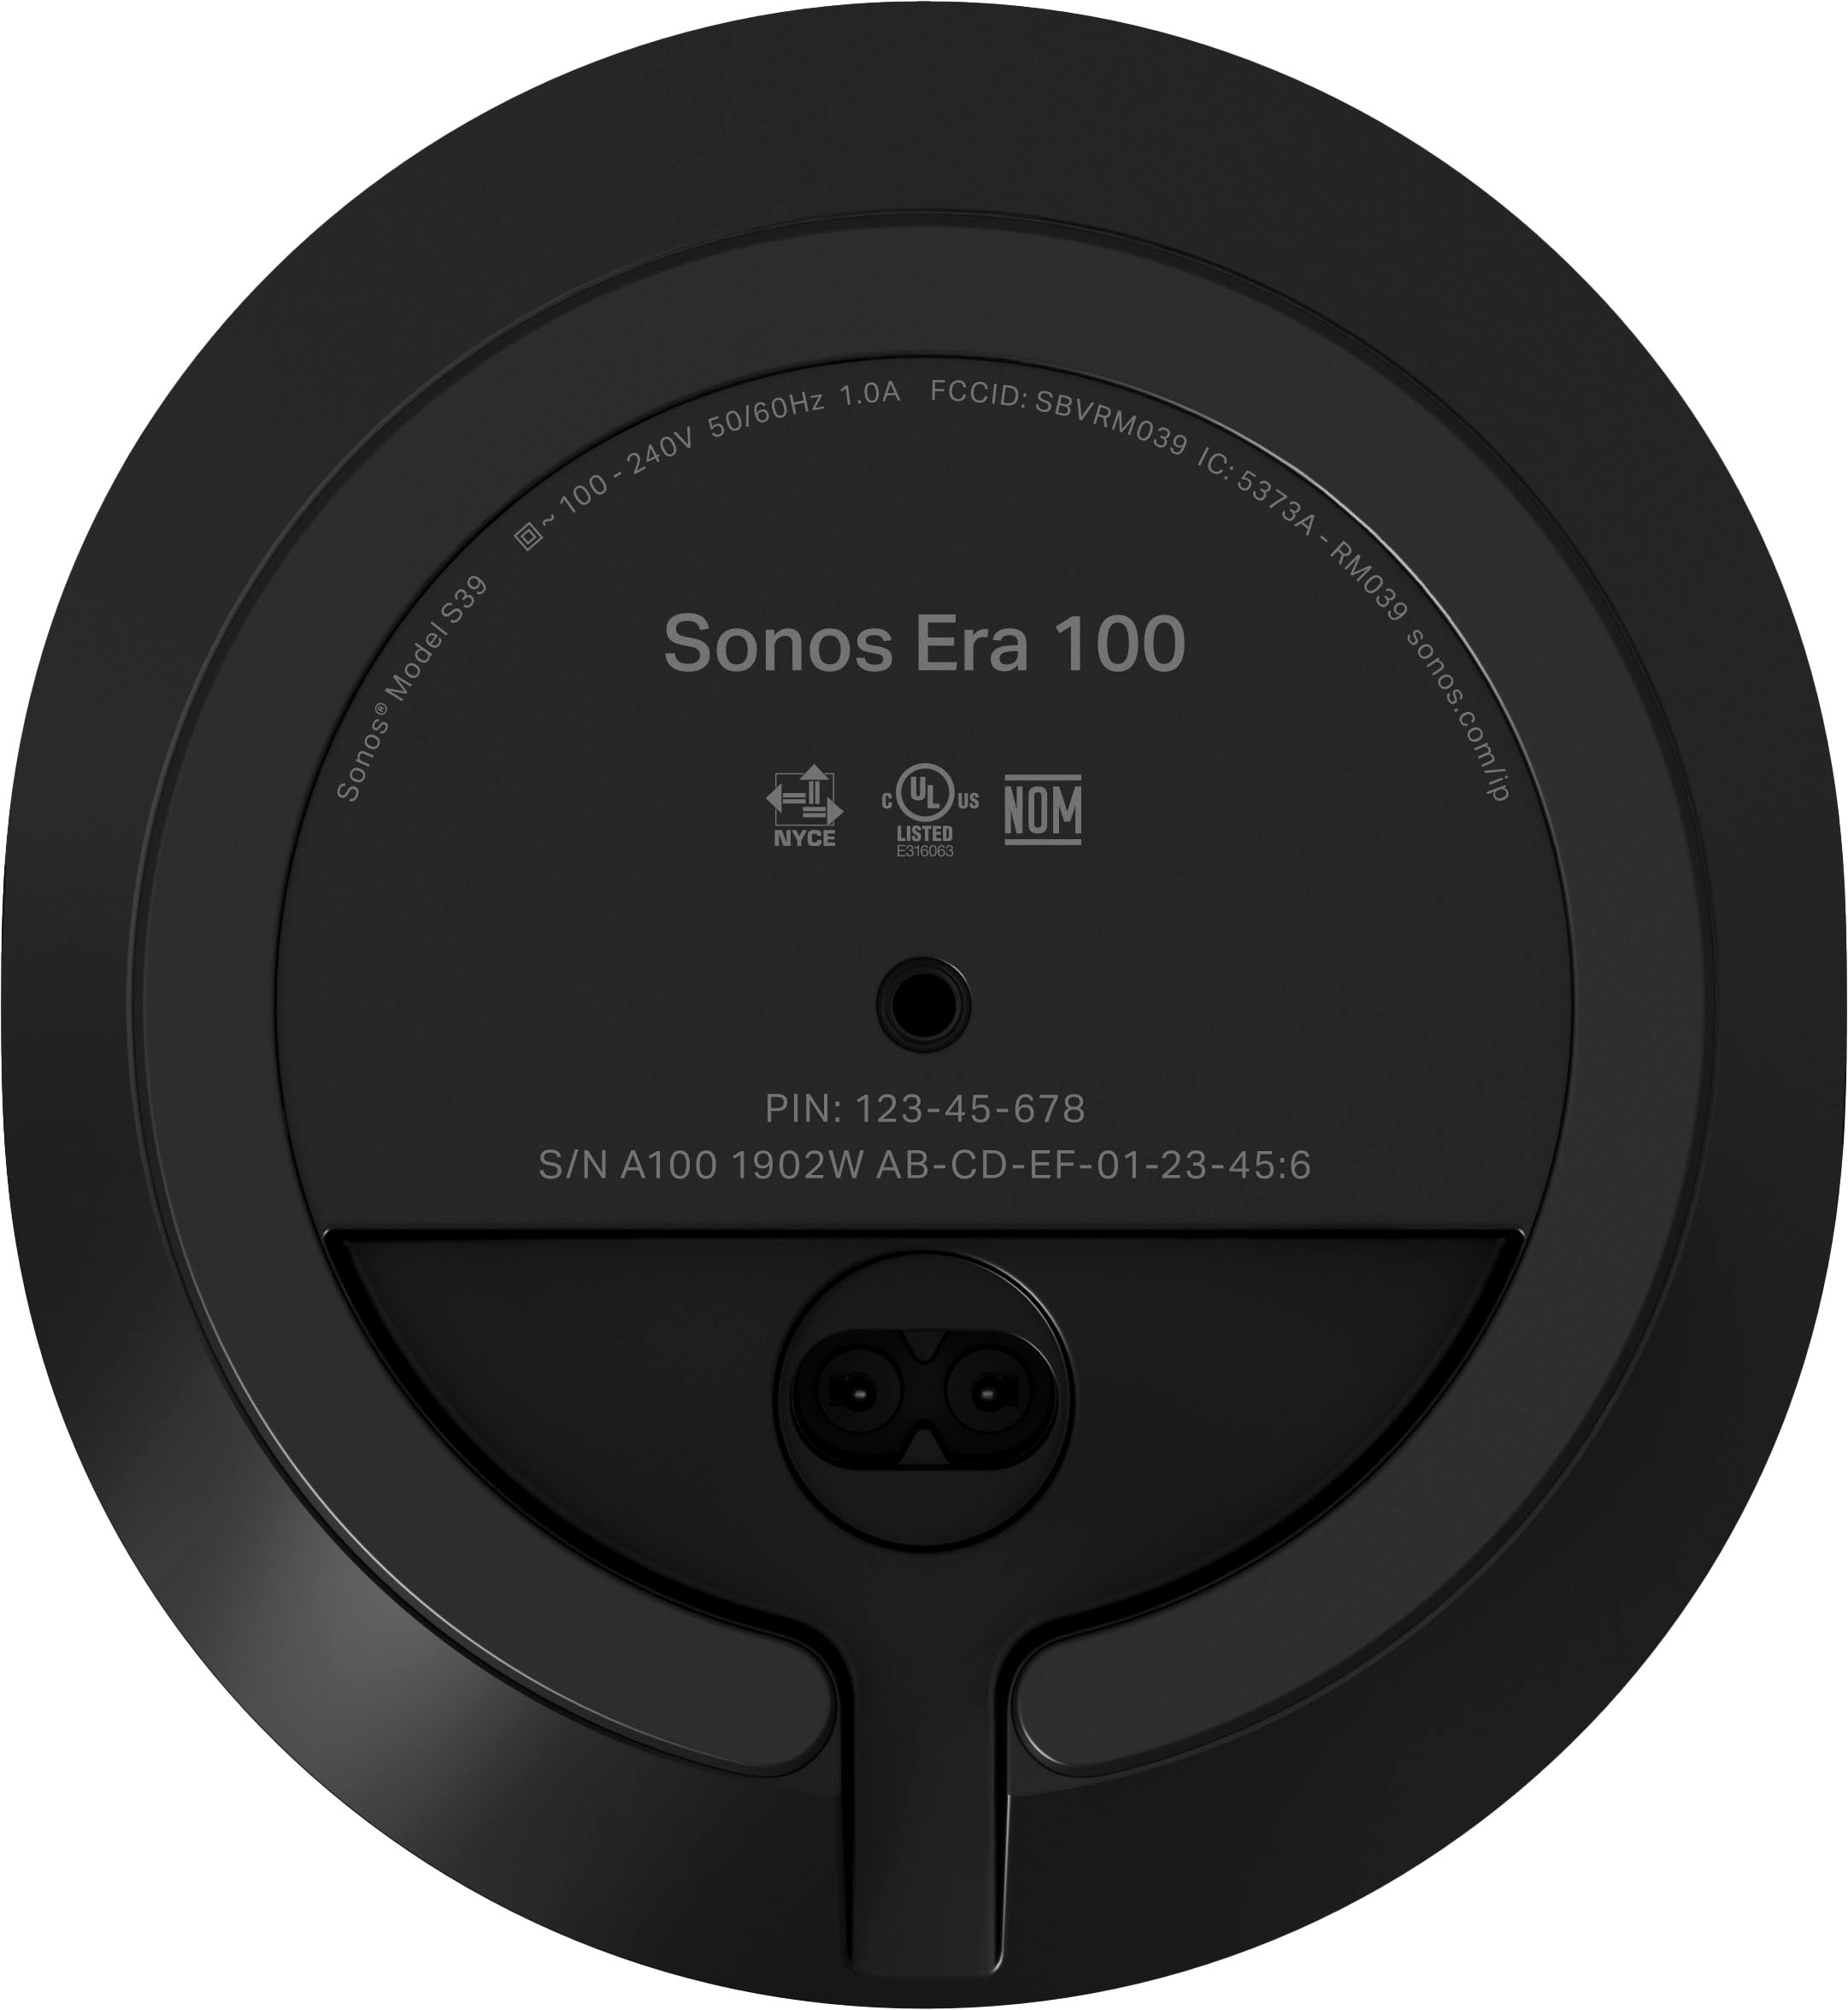 Era 100: The Next-Gen Stereo Bookshelf Speaker